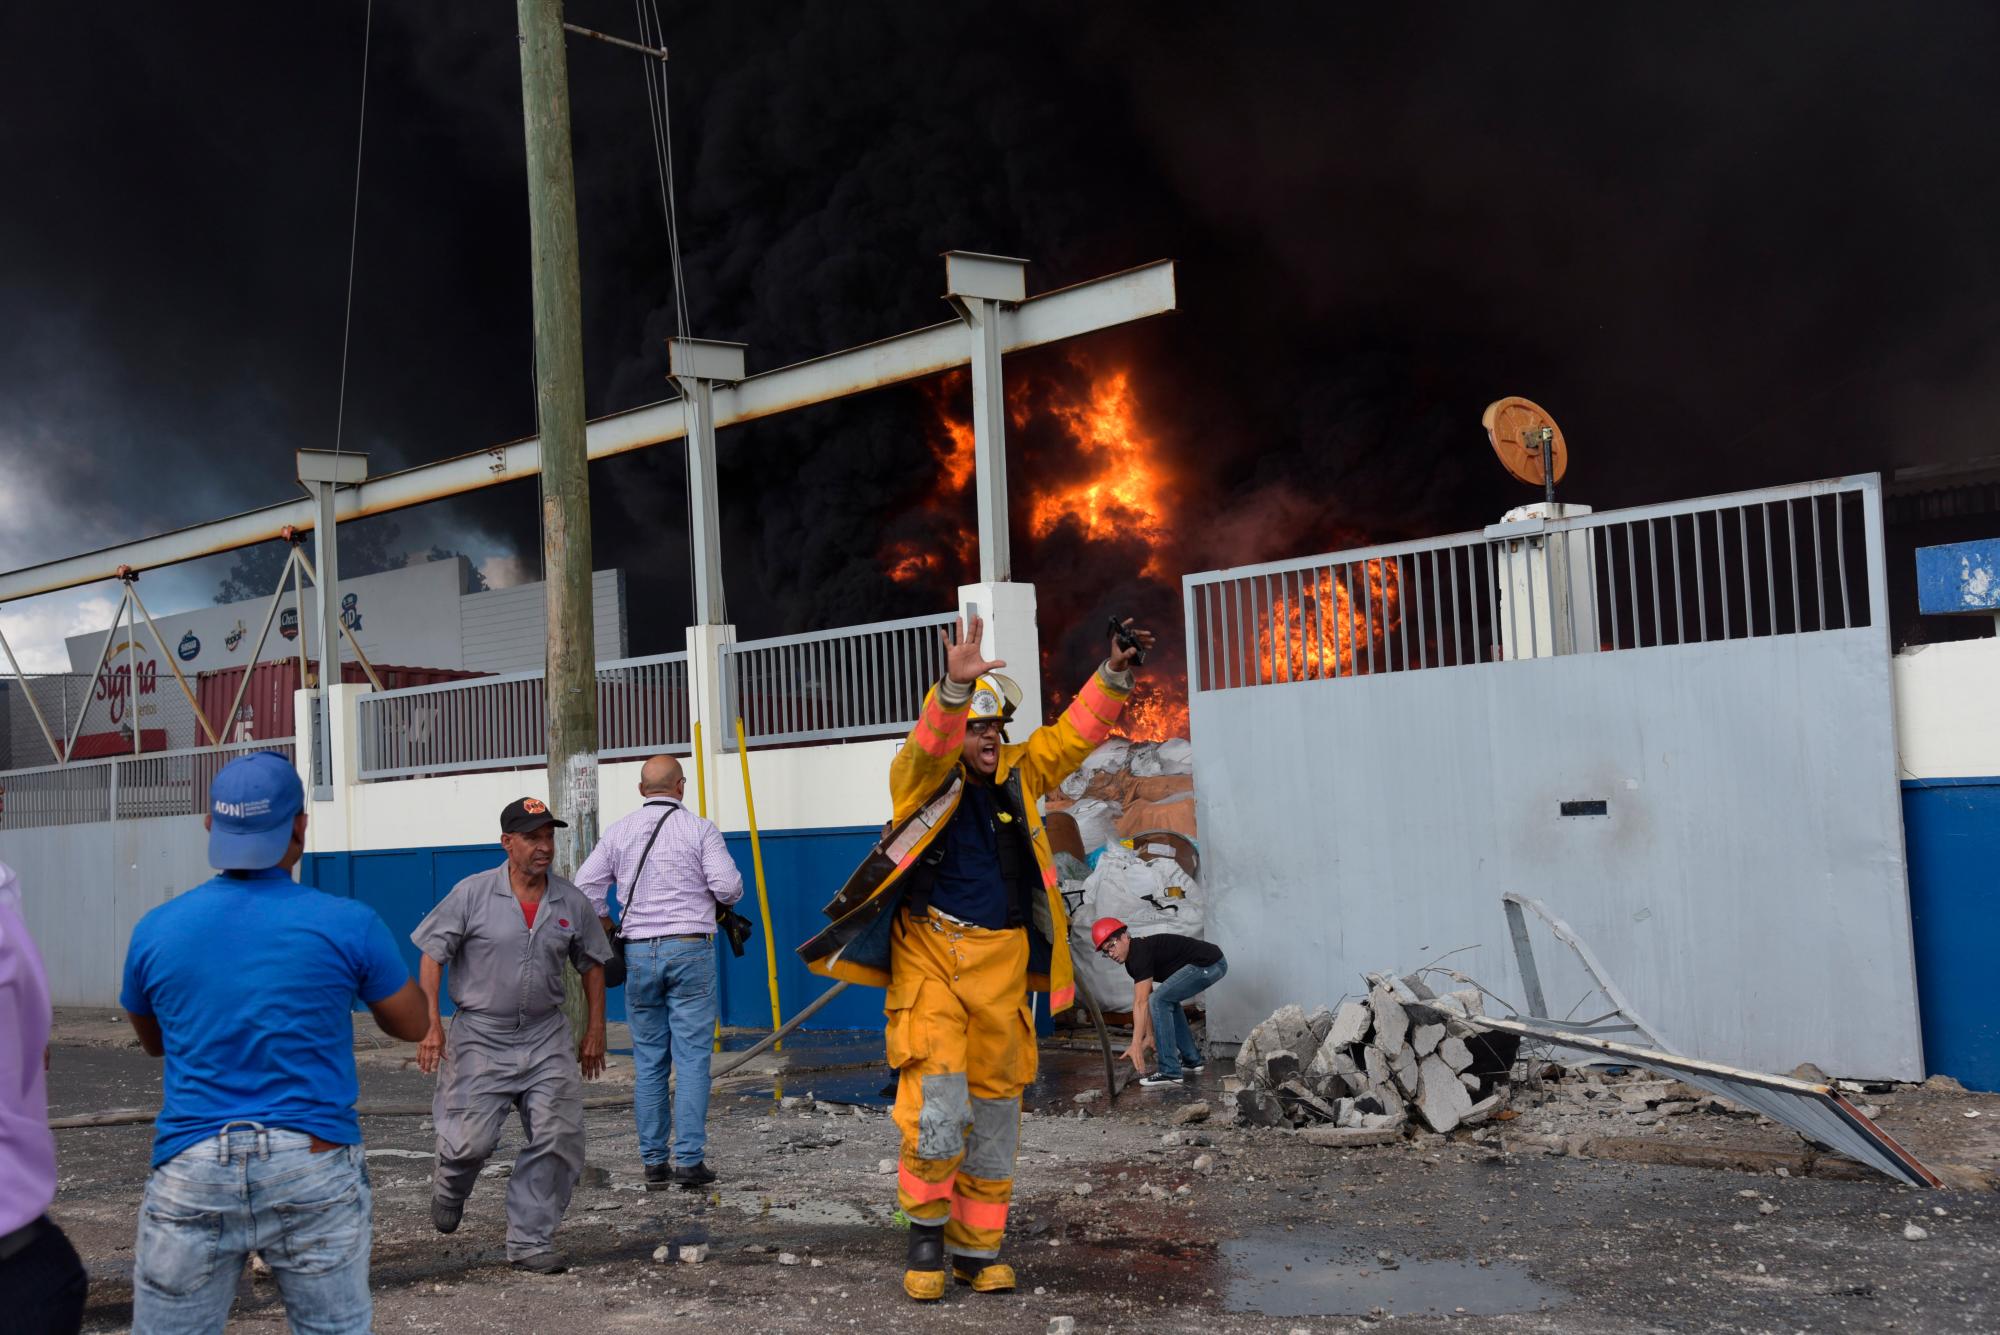 El hospital Francisco Moscoso Puello informó que recibió 31 heridos, entre ellos 13 niños, de los afectados con la explosión en la fábrica de plástico Polyplas, ubicada en el sector Villas Agrícolas del Distrito Nacional.